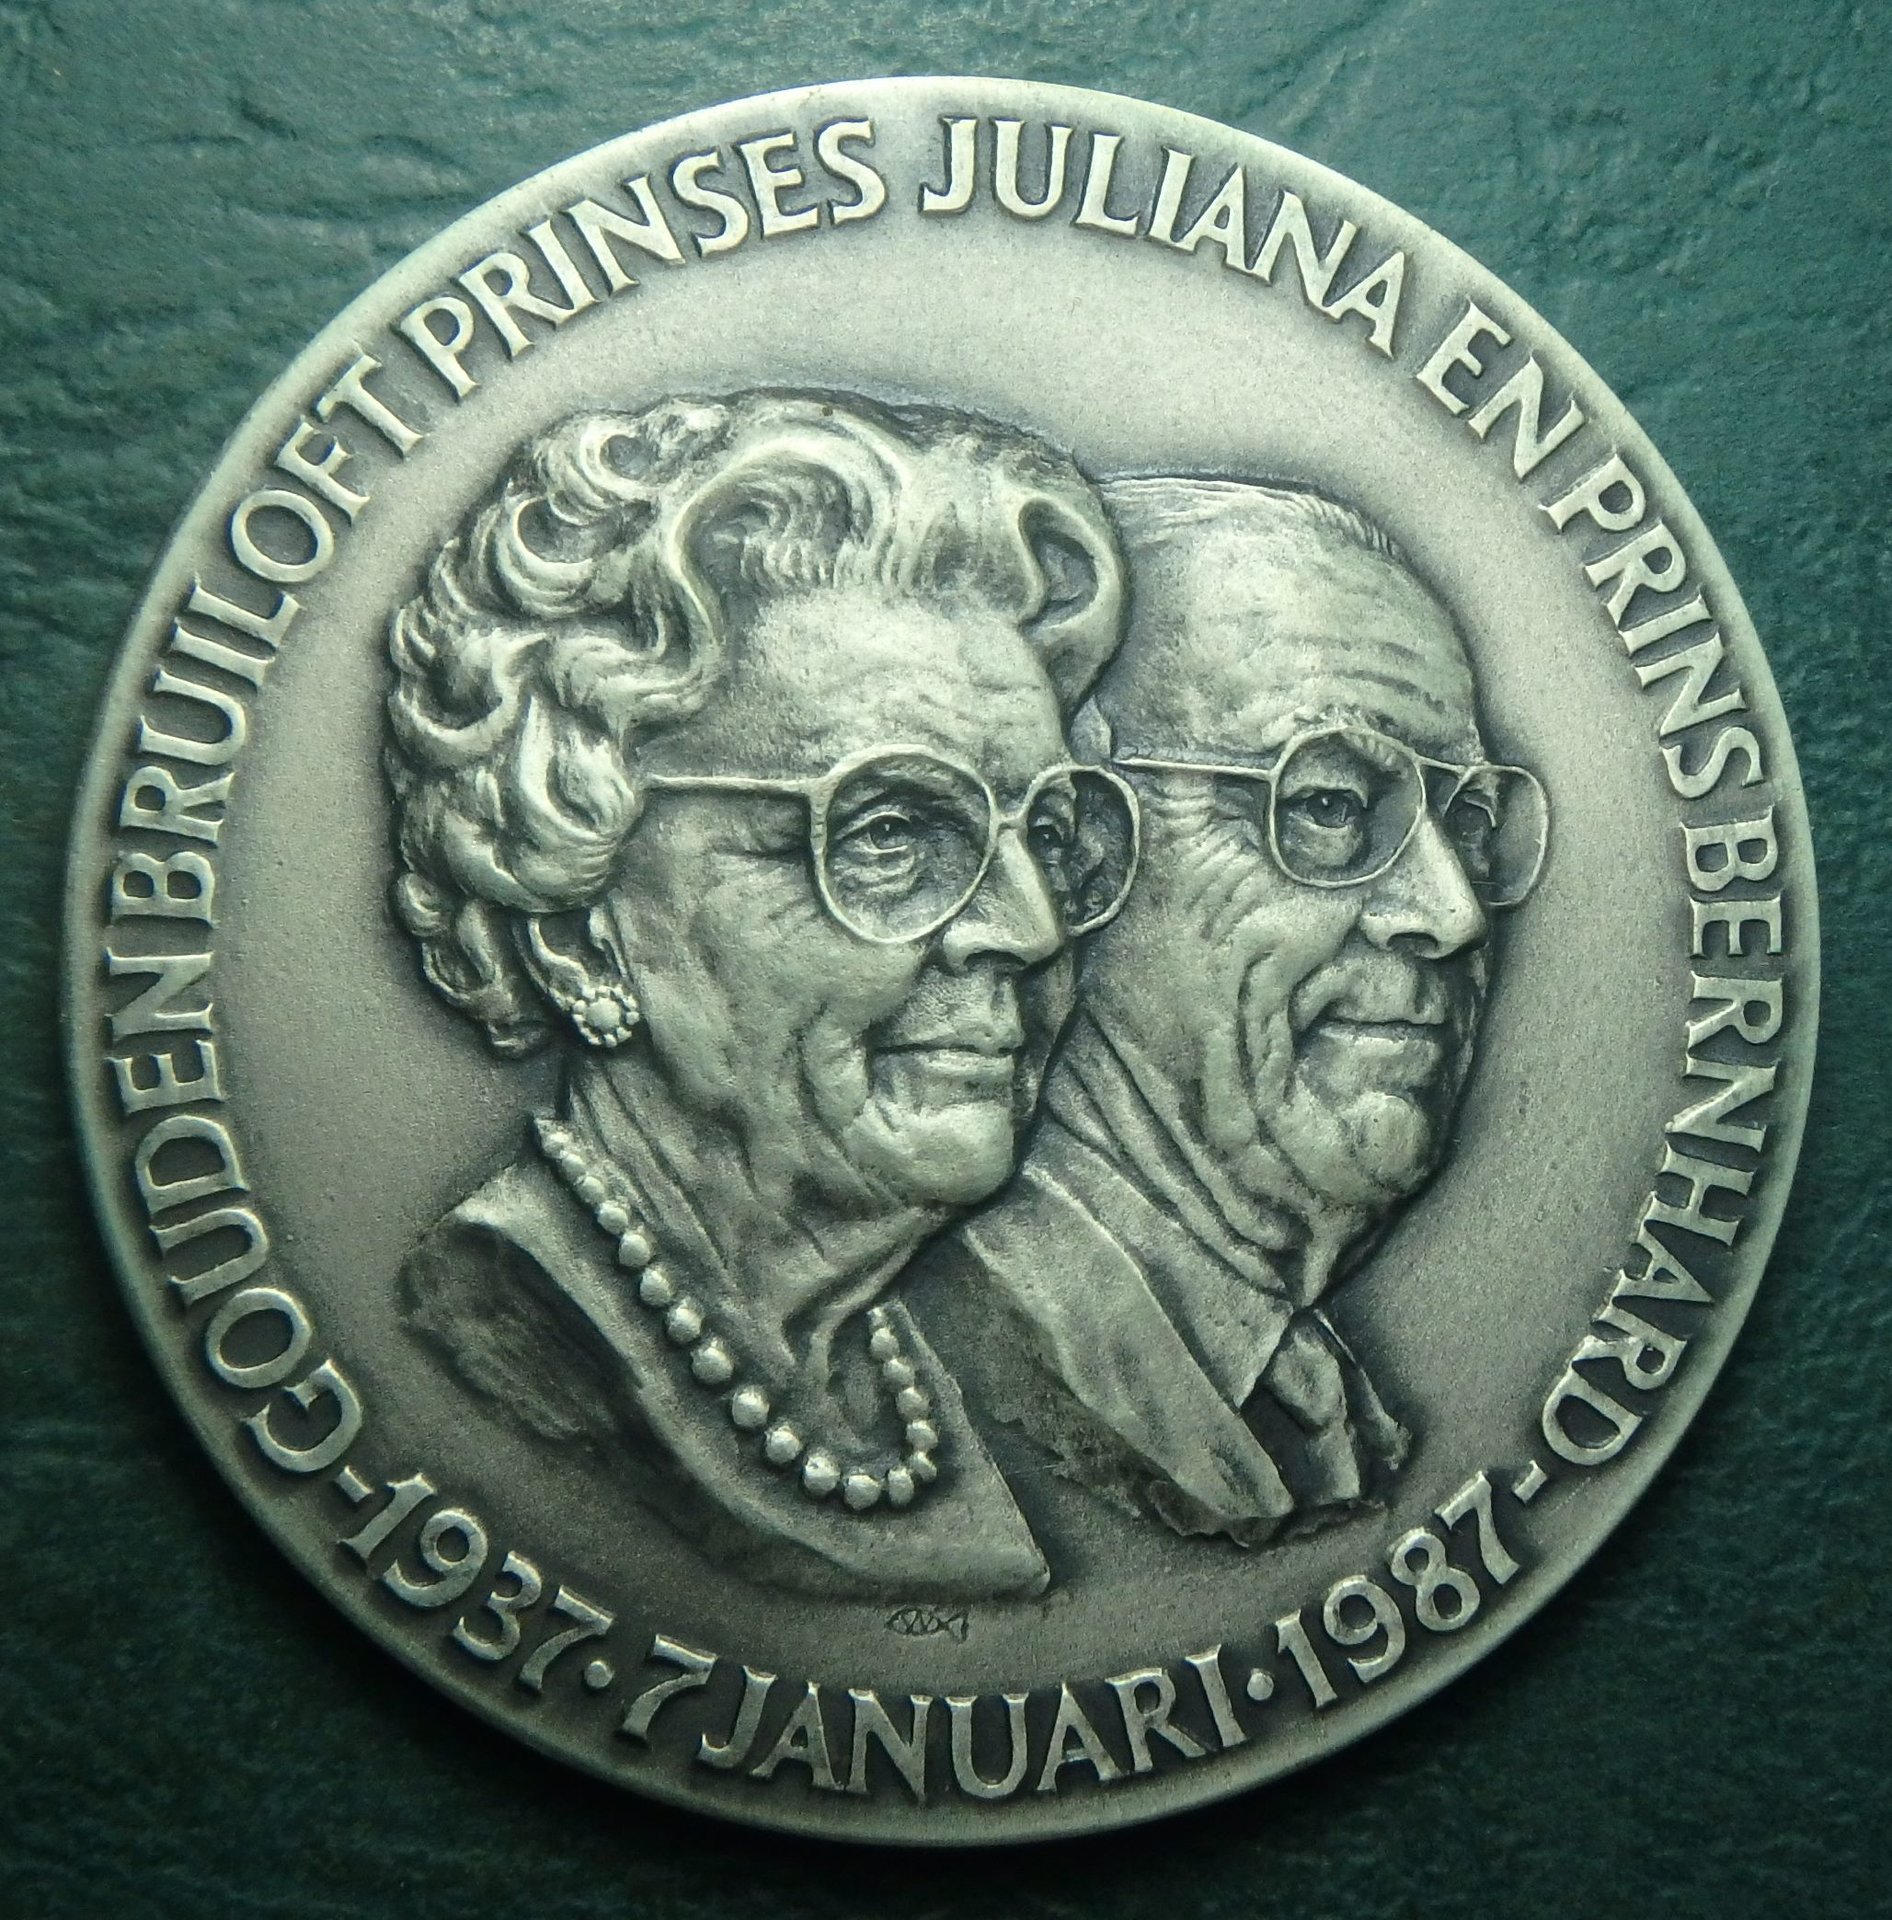 1987 NL medal obv.JPG